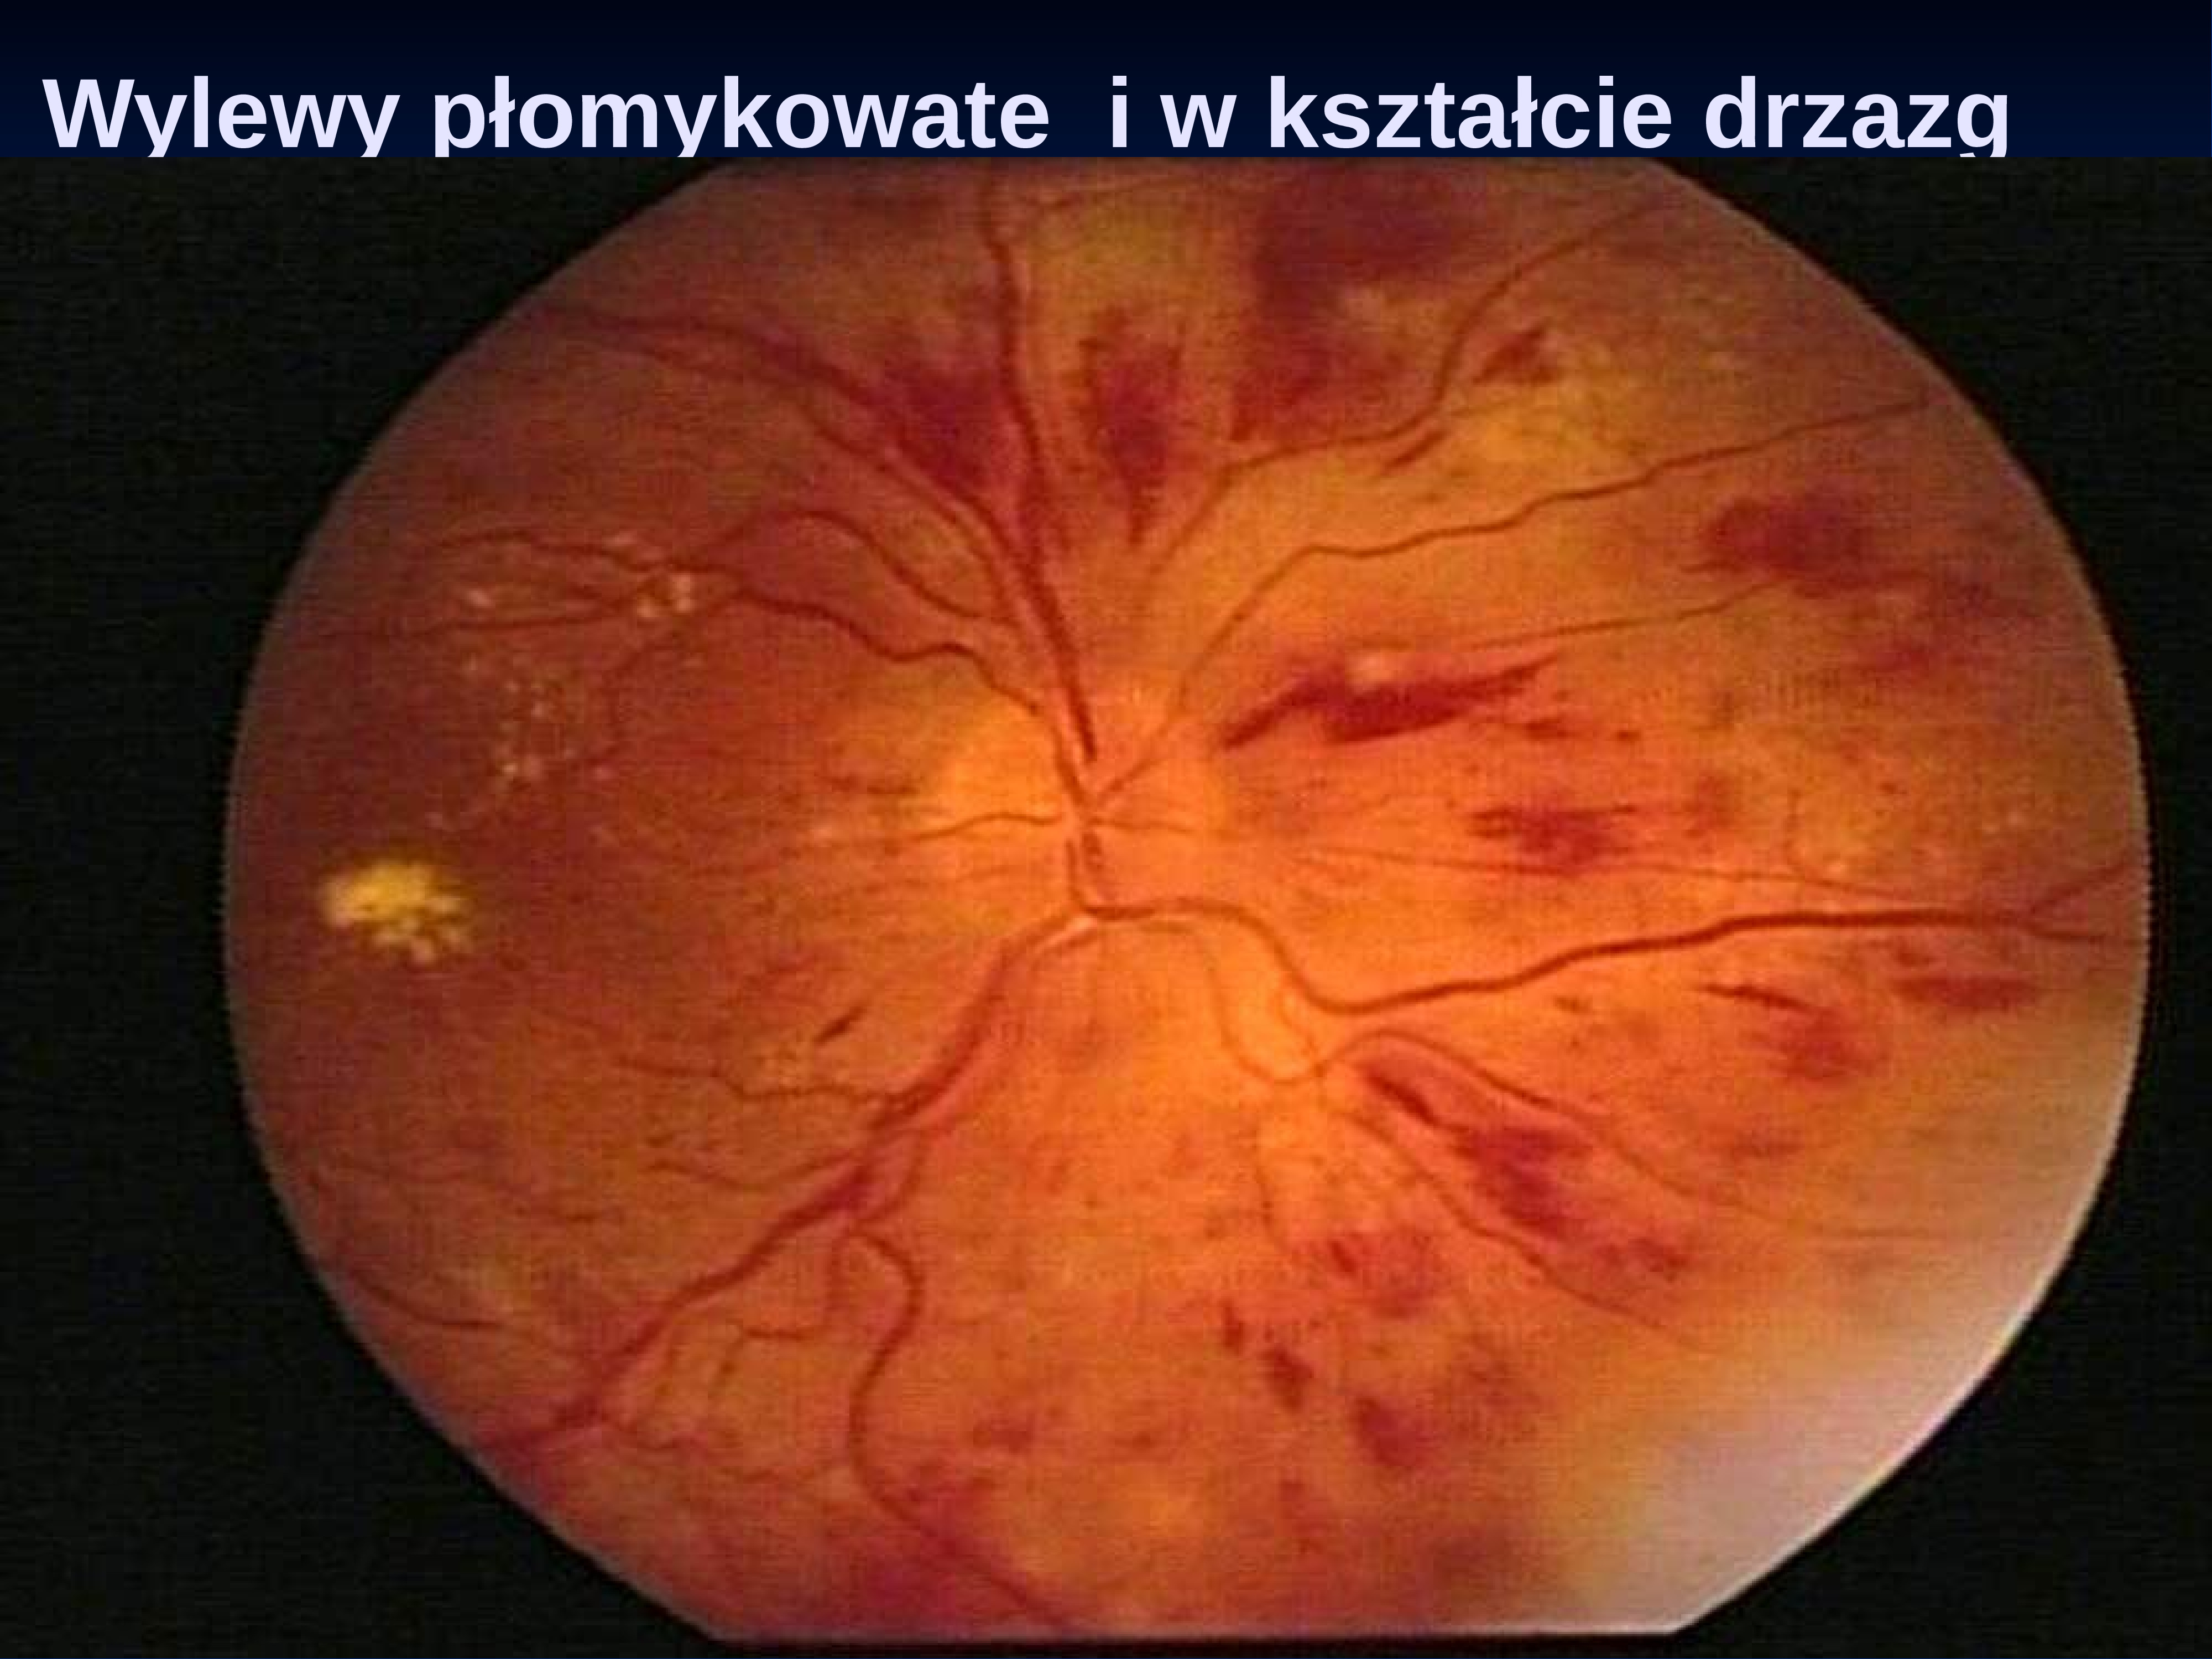 Сетчатки обоих глаз. Глазное дно гипертоническая ретинопатия. Преретинальное кровоизлияние. Геморрагическая ретинопатия. Ишемическая диабетическая ретинопатия.